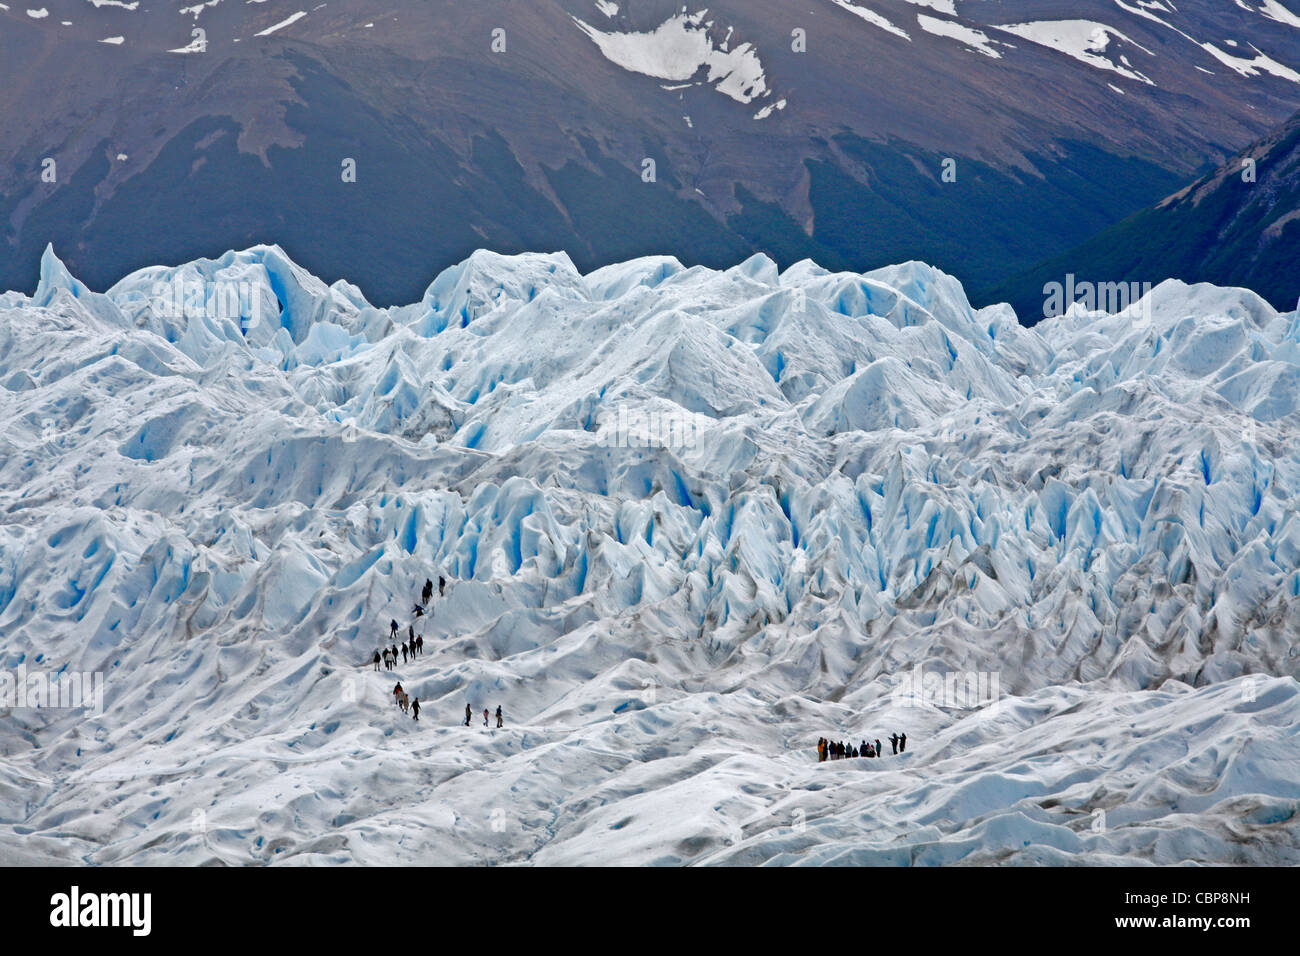 Menschen am Perito Moreno Gletscher wandern. Los Glaciares National Park, El Calafate, Provinz Santa Cruz. Patagonien. Argentinien. Stockfoto